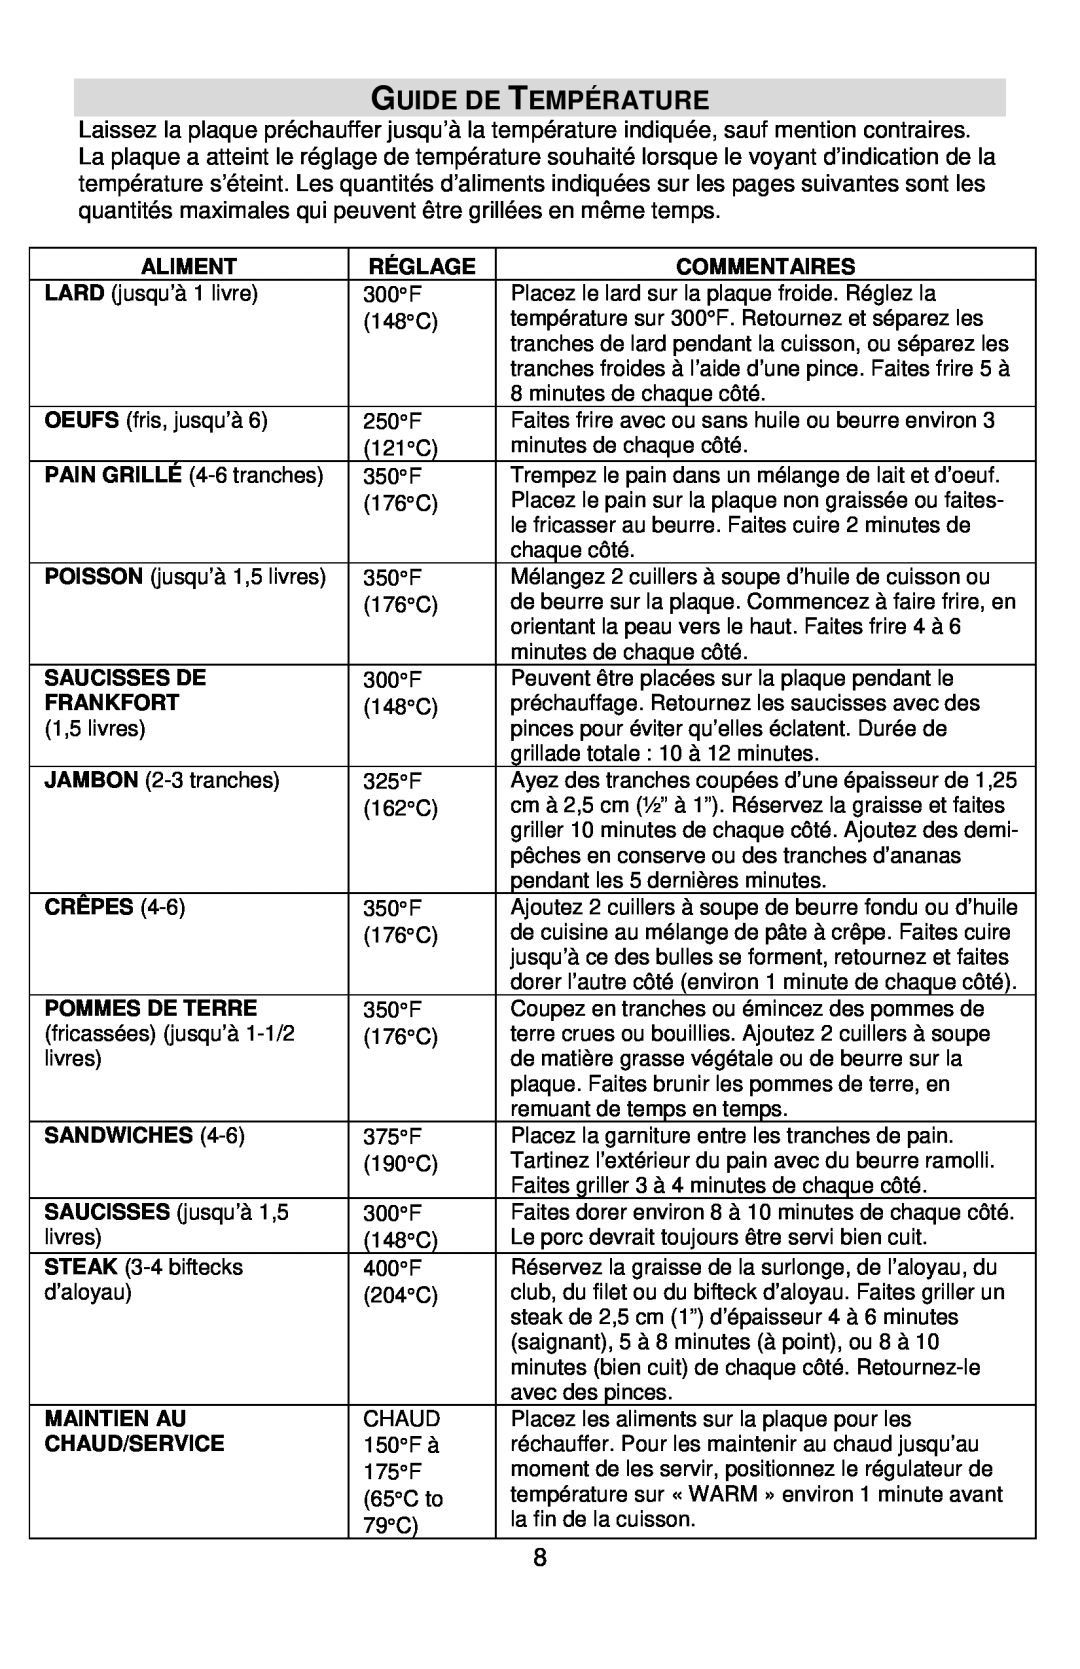 West Bend L5749A instruction manual Guide De Température 